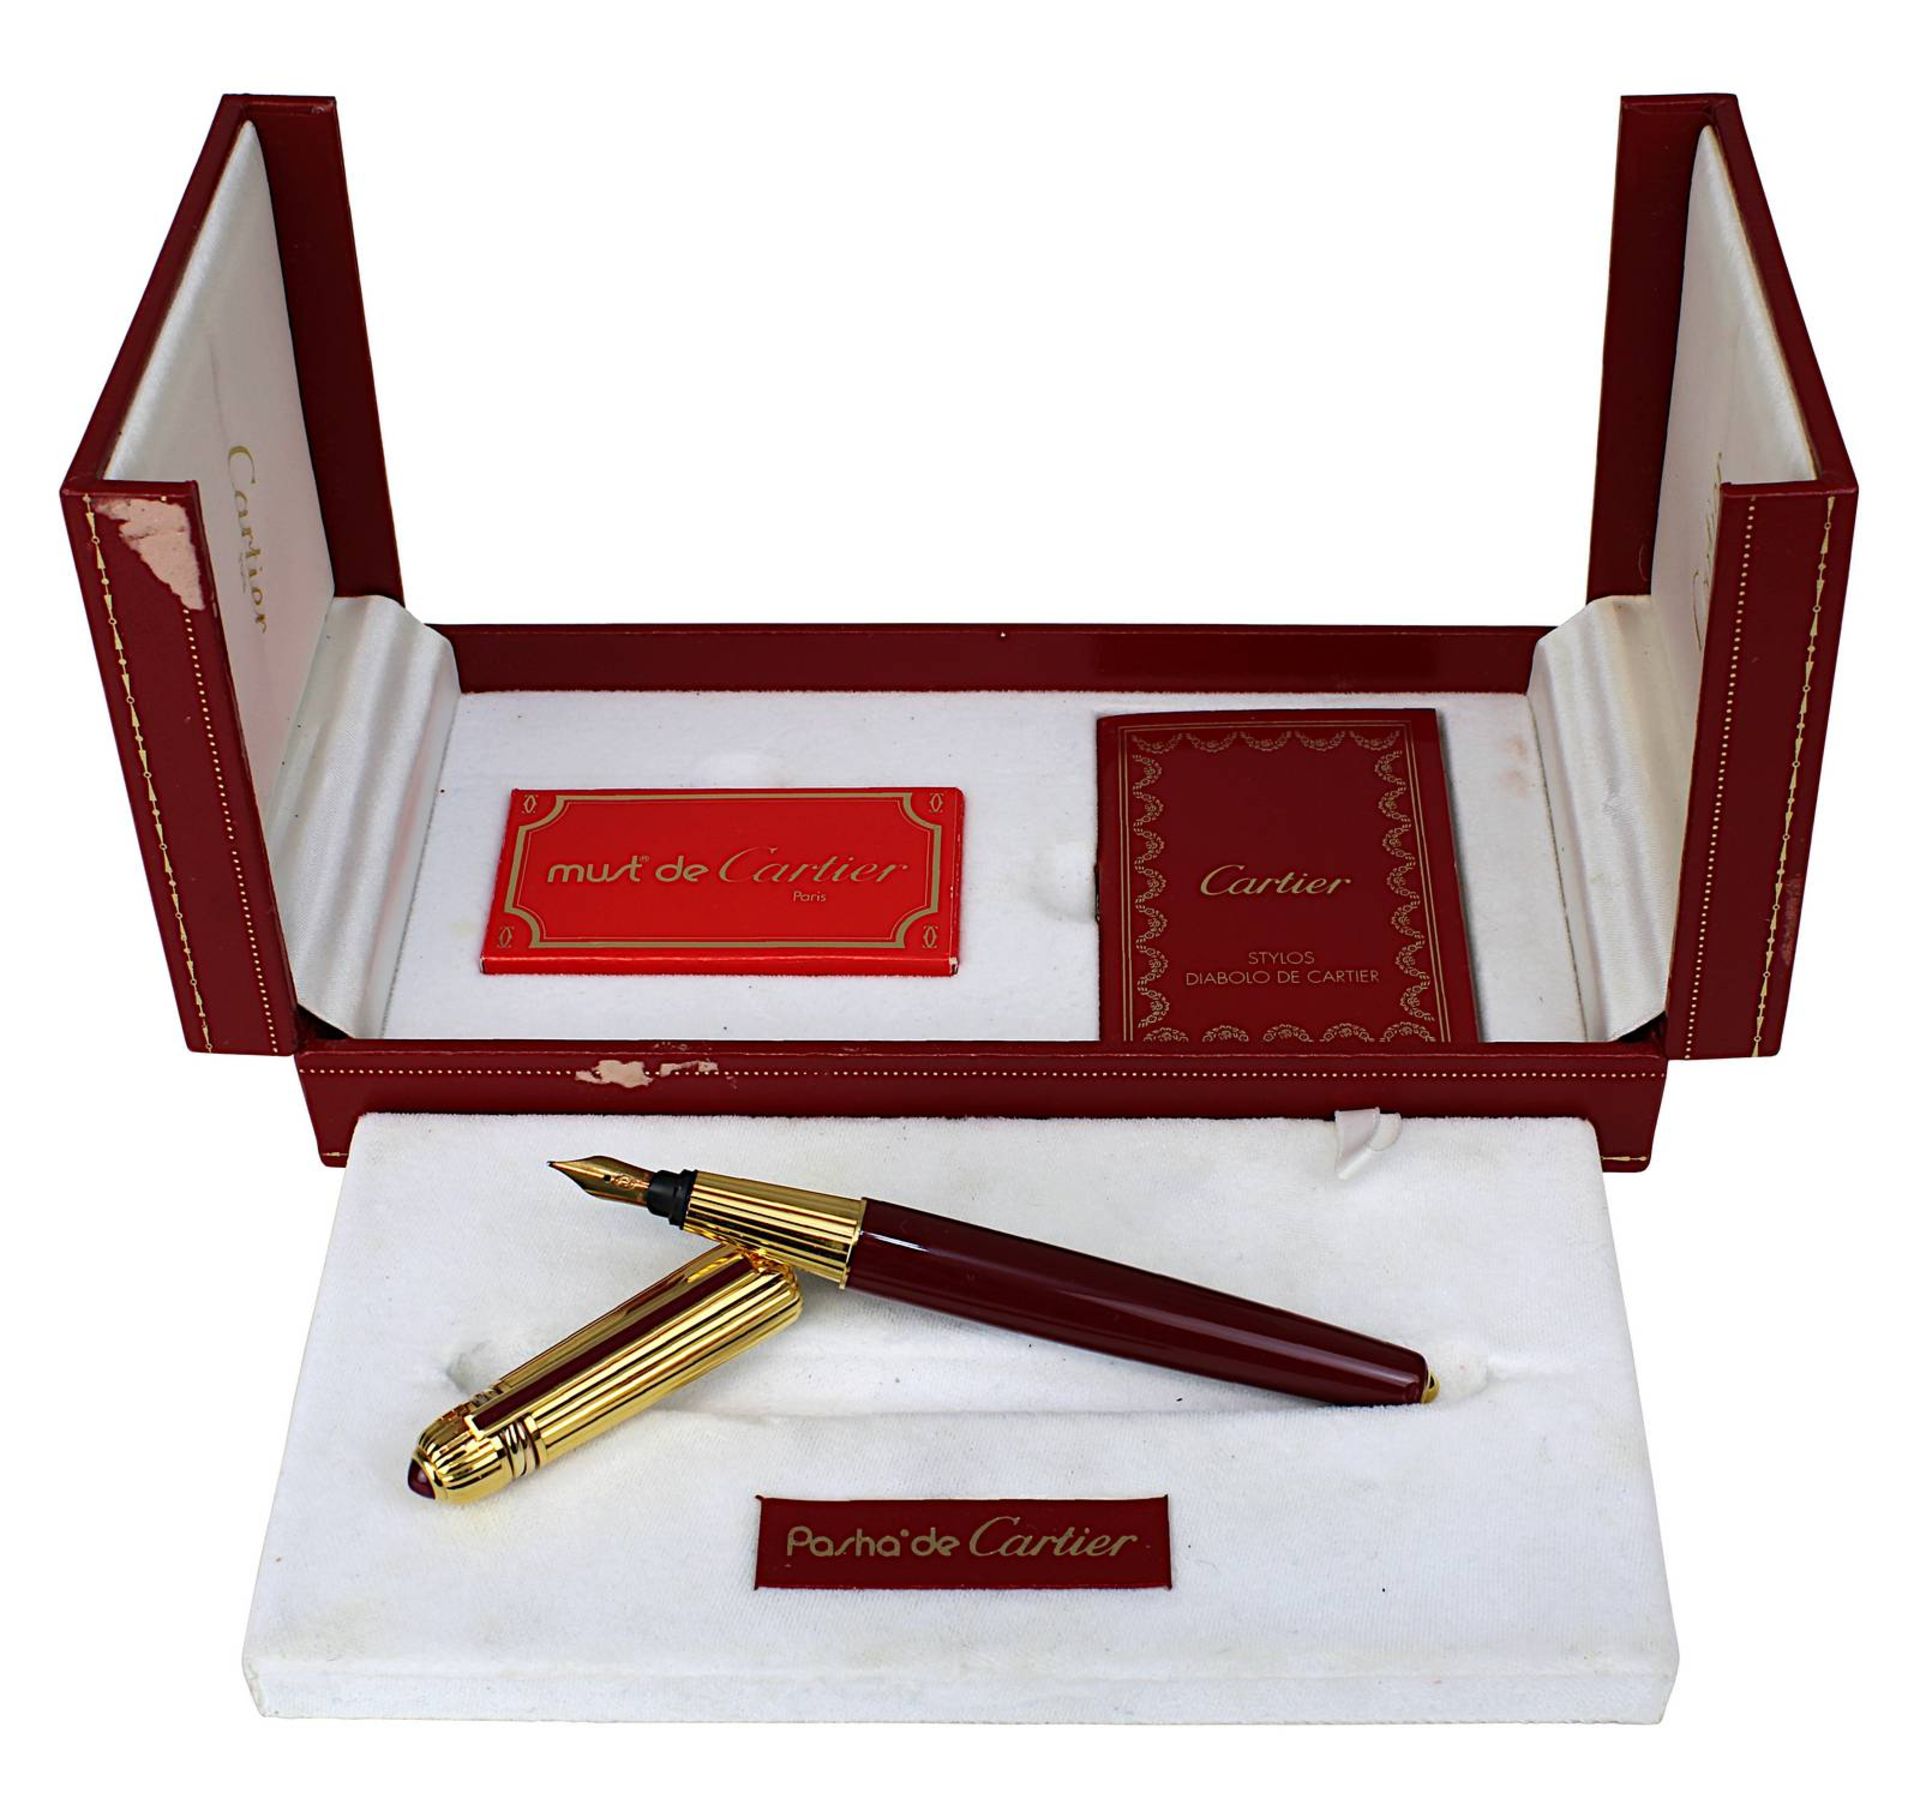 Pasha de Cartier Füllfederhalter, Fountain Pen Stylo rare Edition 1987, Laque de Chine und 18 Kt.